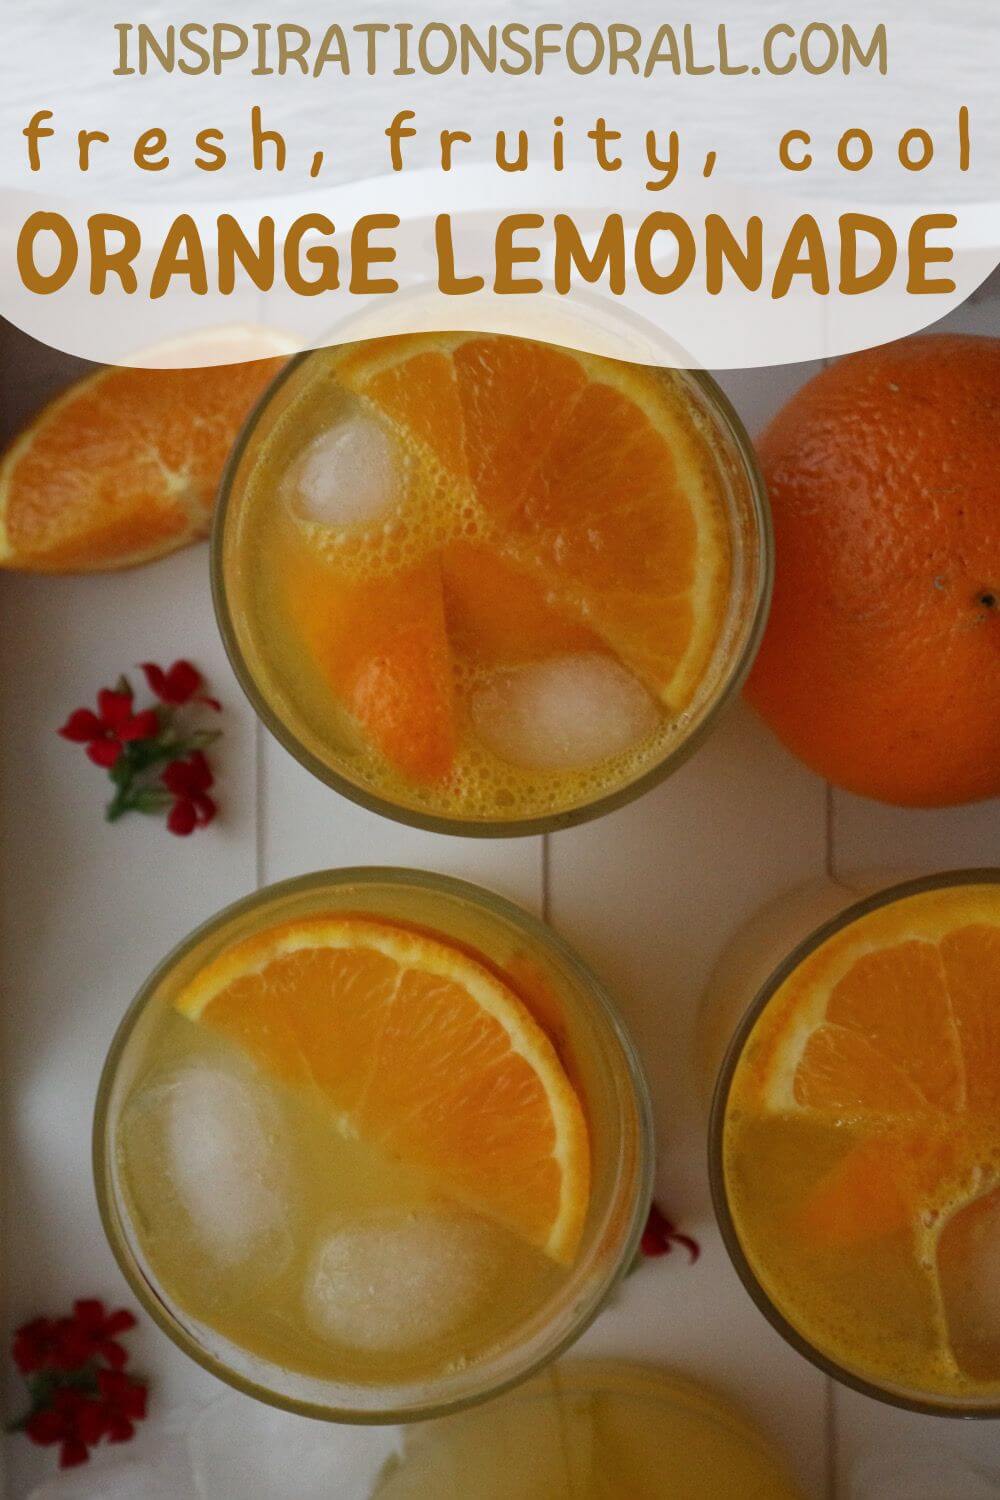 Pin Orange lemonade